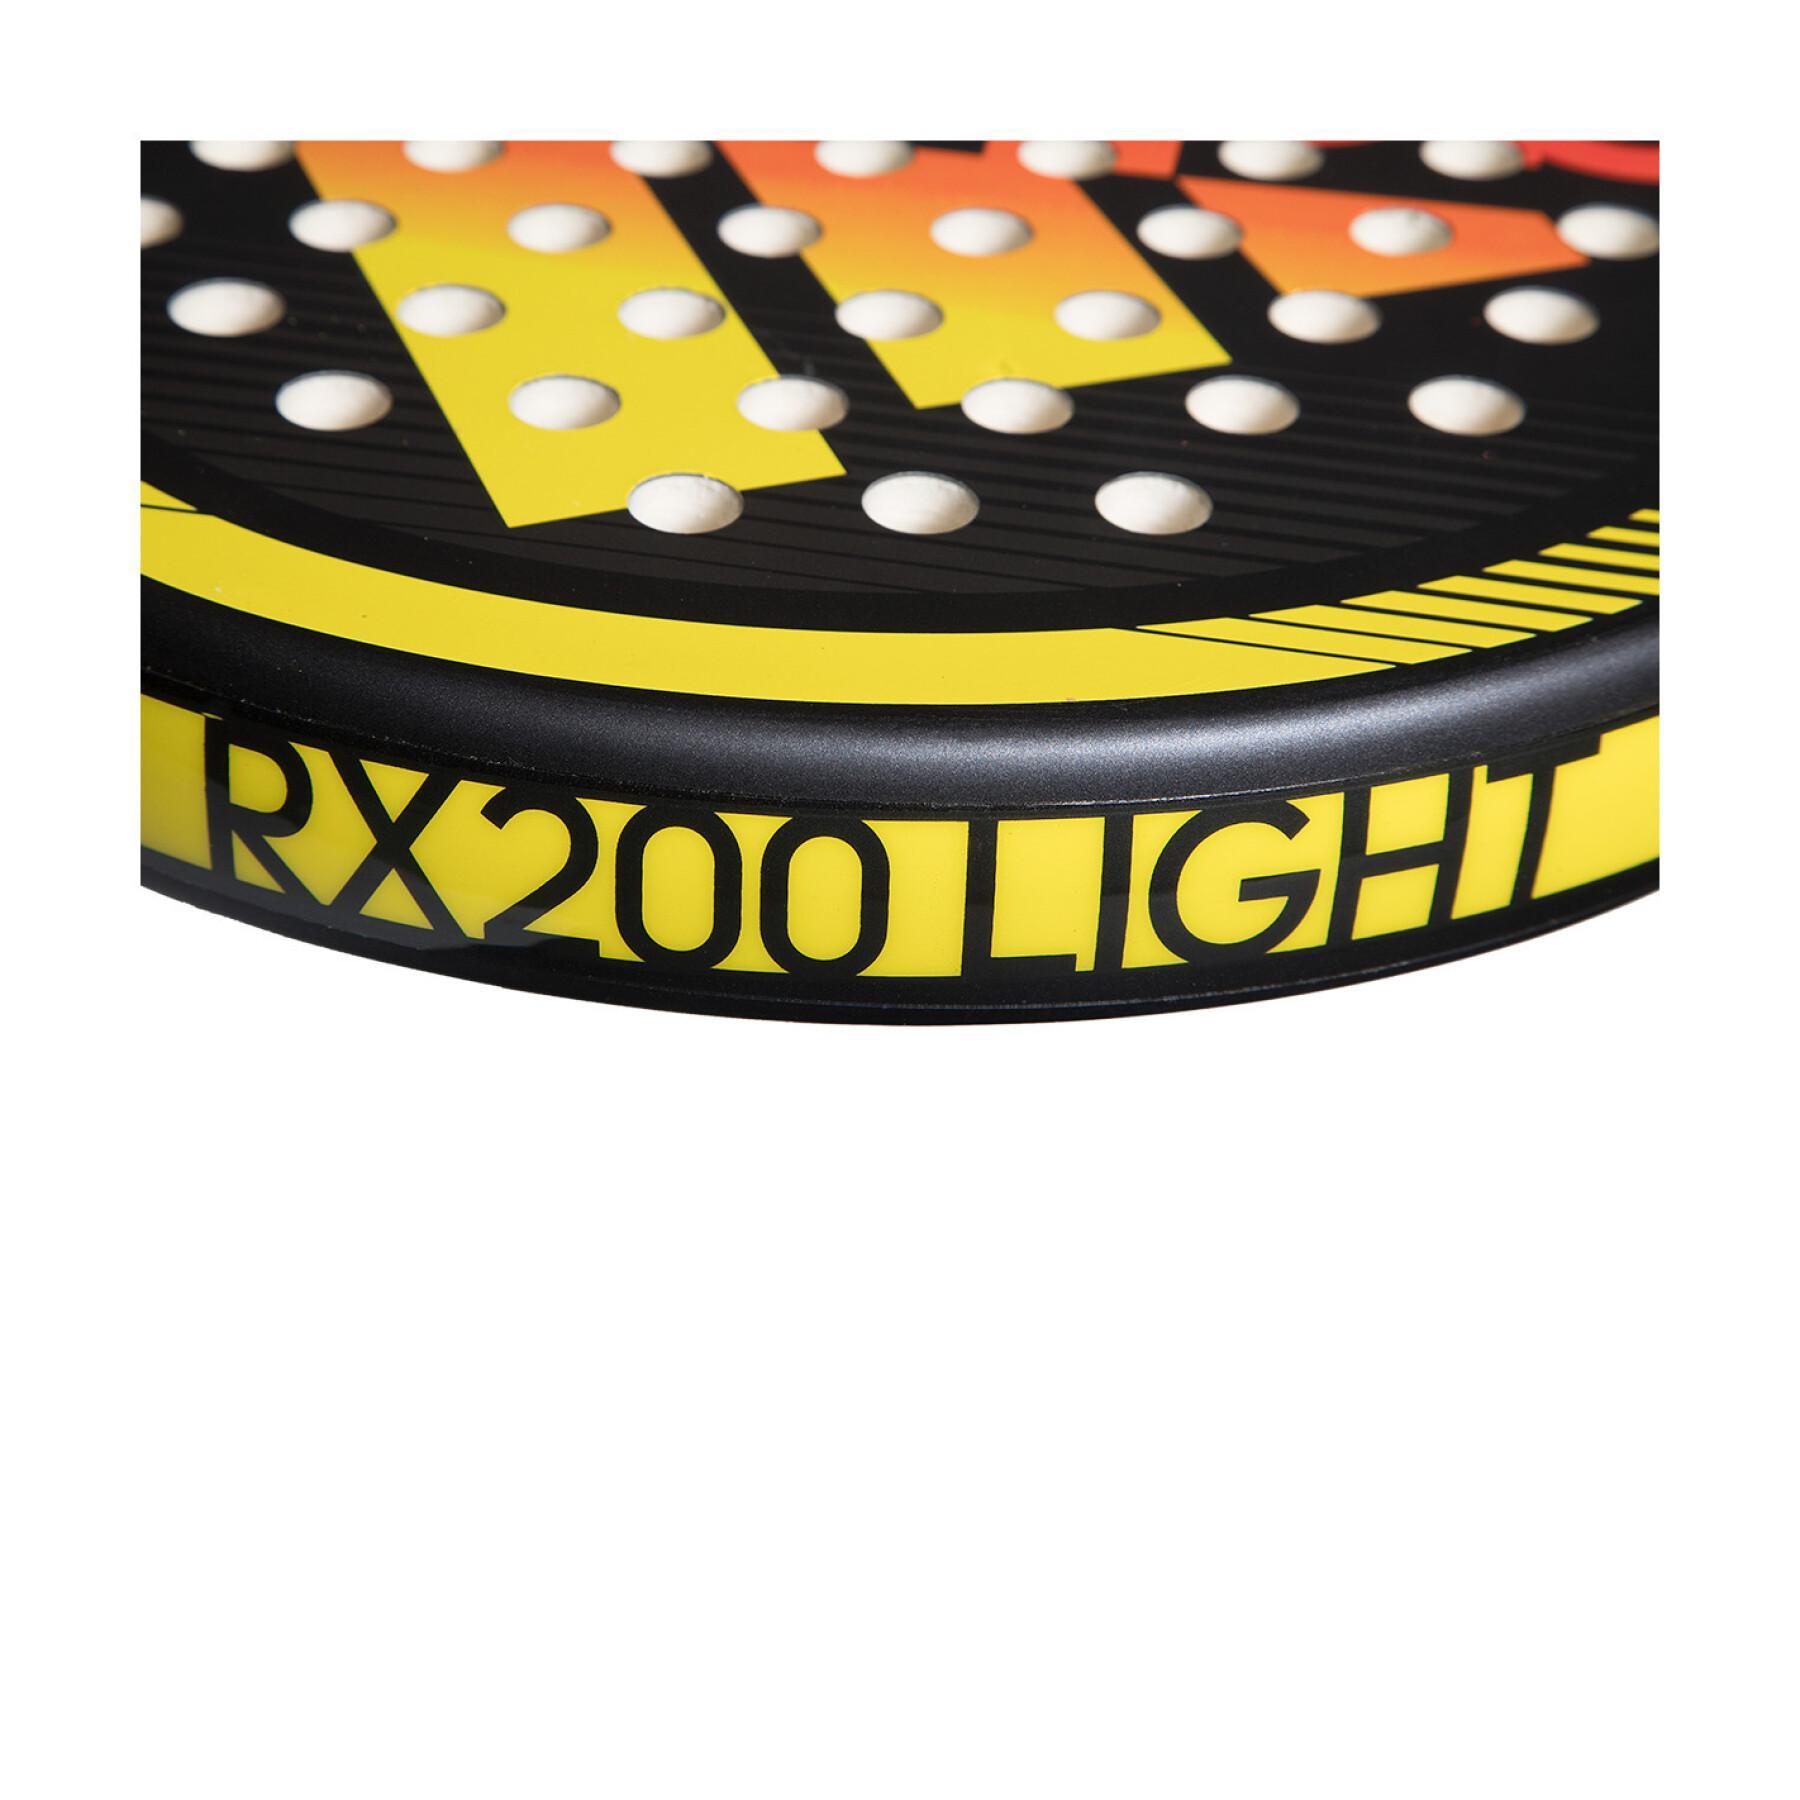 Padel-Schläger adidas RX 200 Light